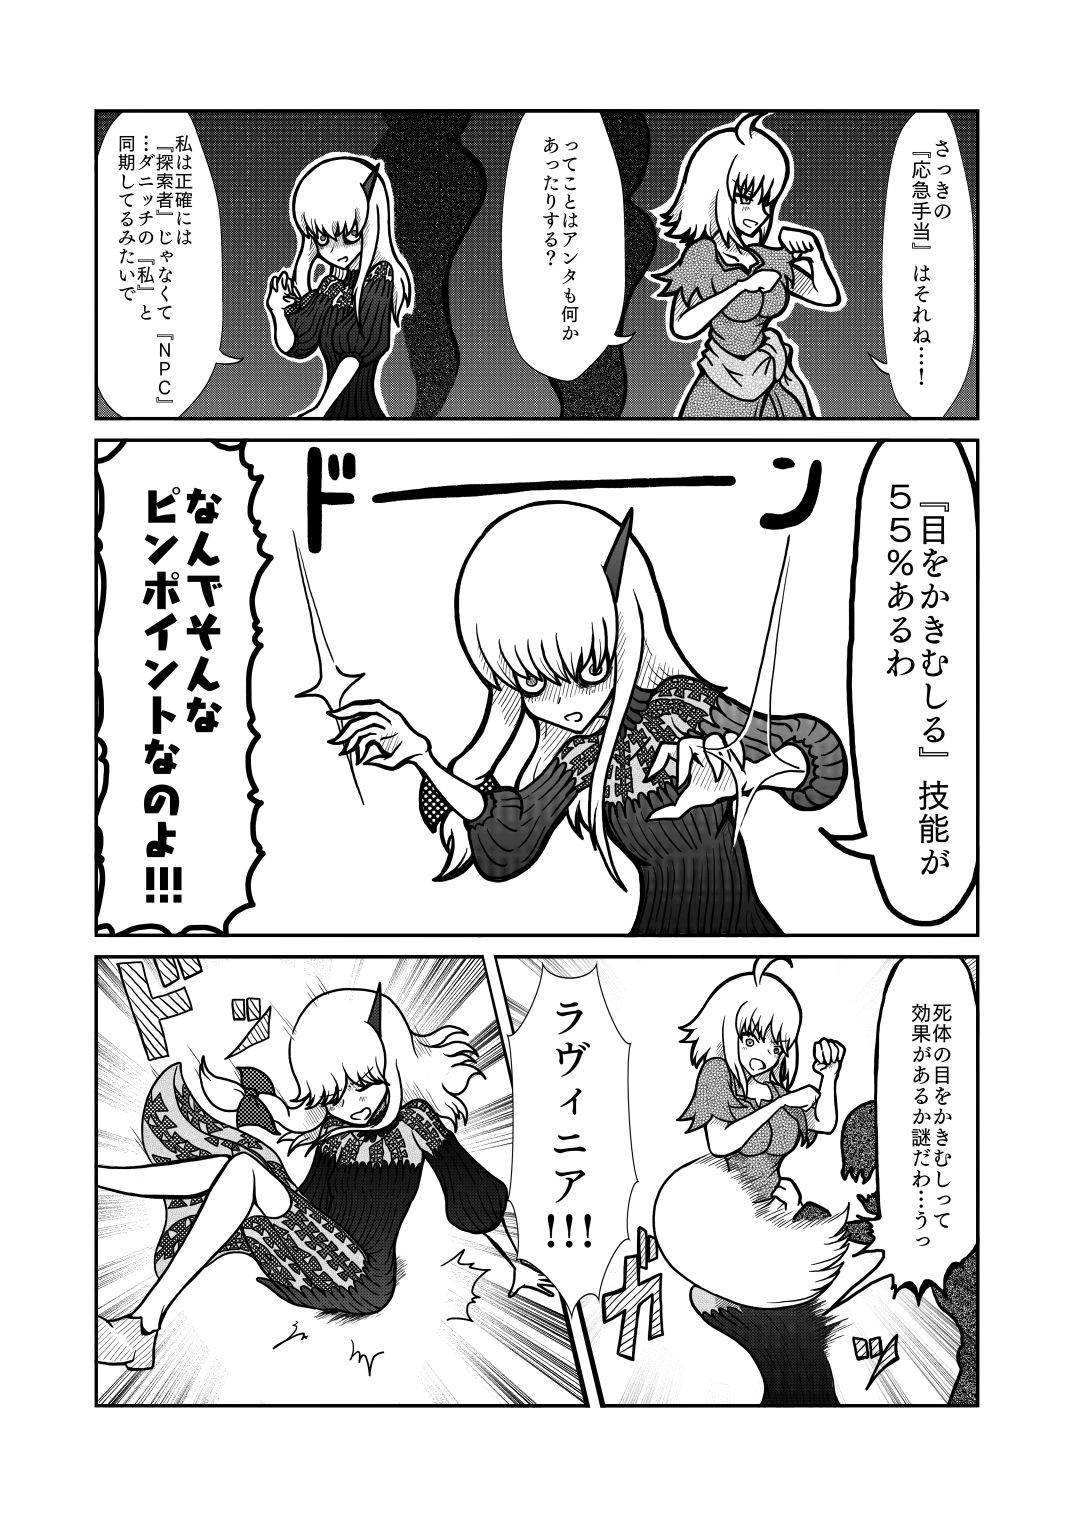 [Shigato] Jeanne x Lavi Dunwich Kai Kikou (Fate/Grand Order, Cthulhu Mythos) [Digital] 27